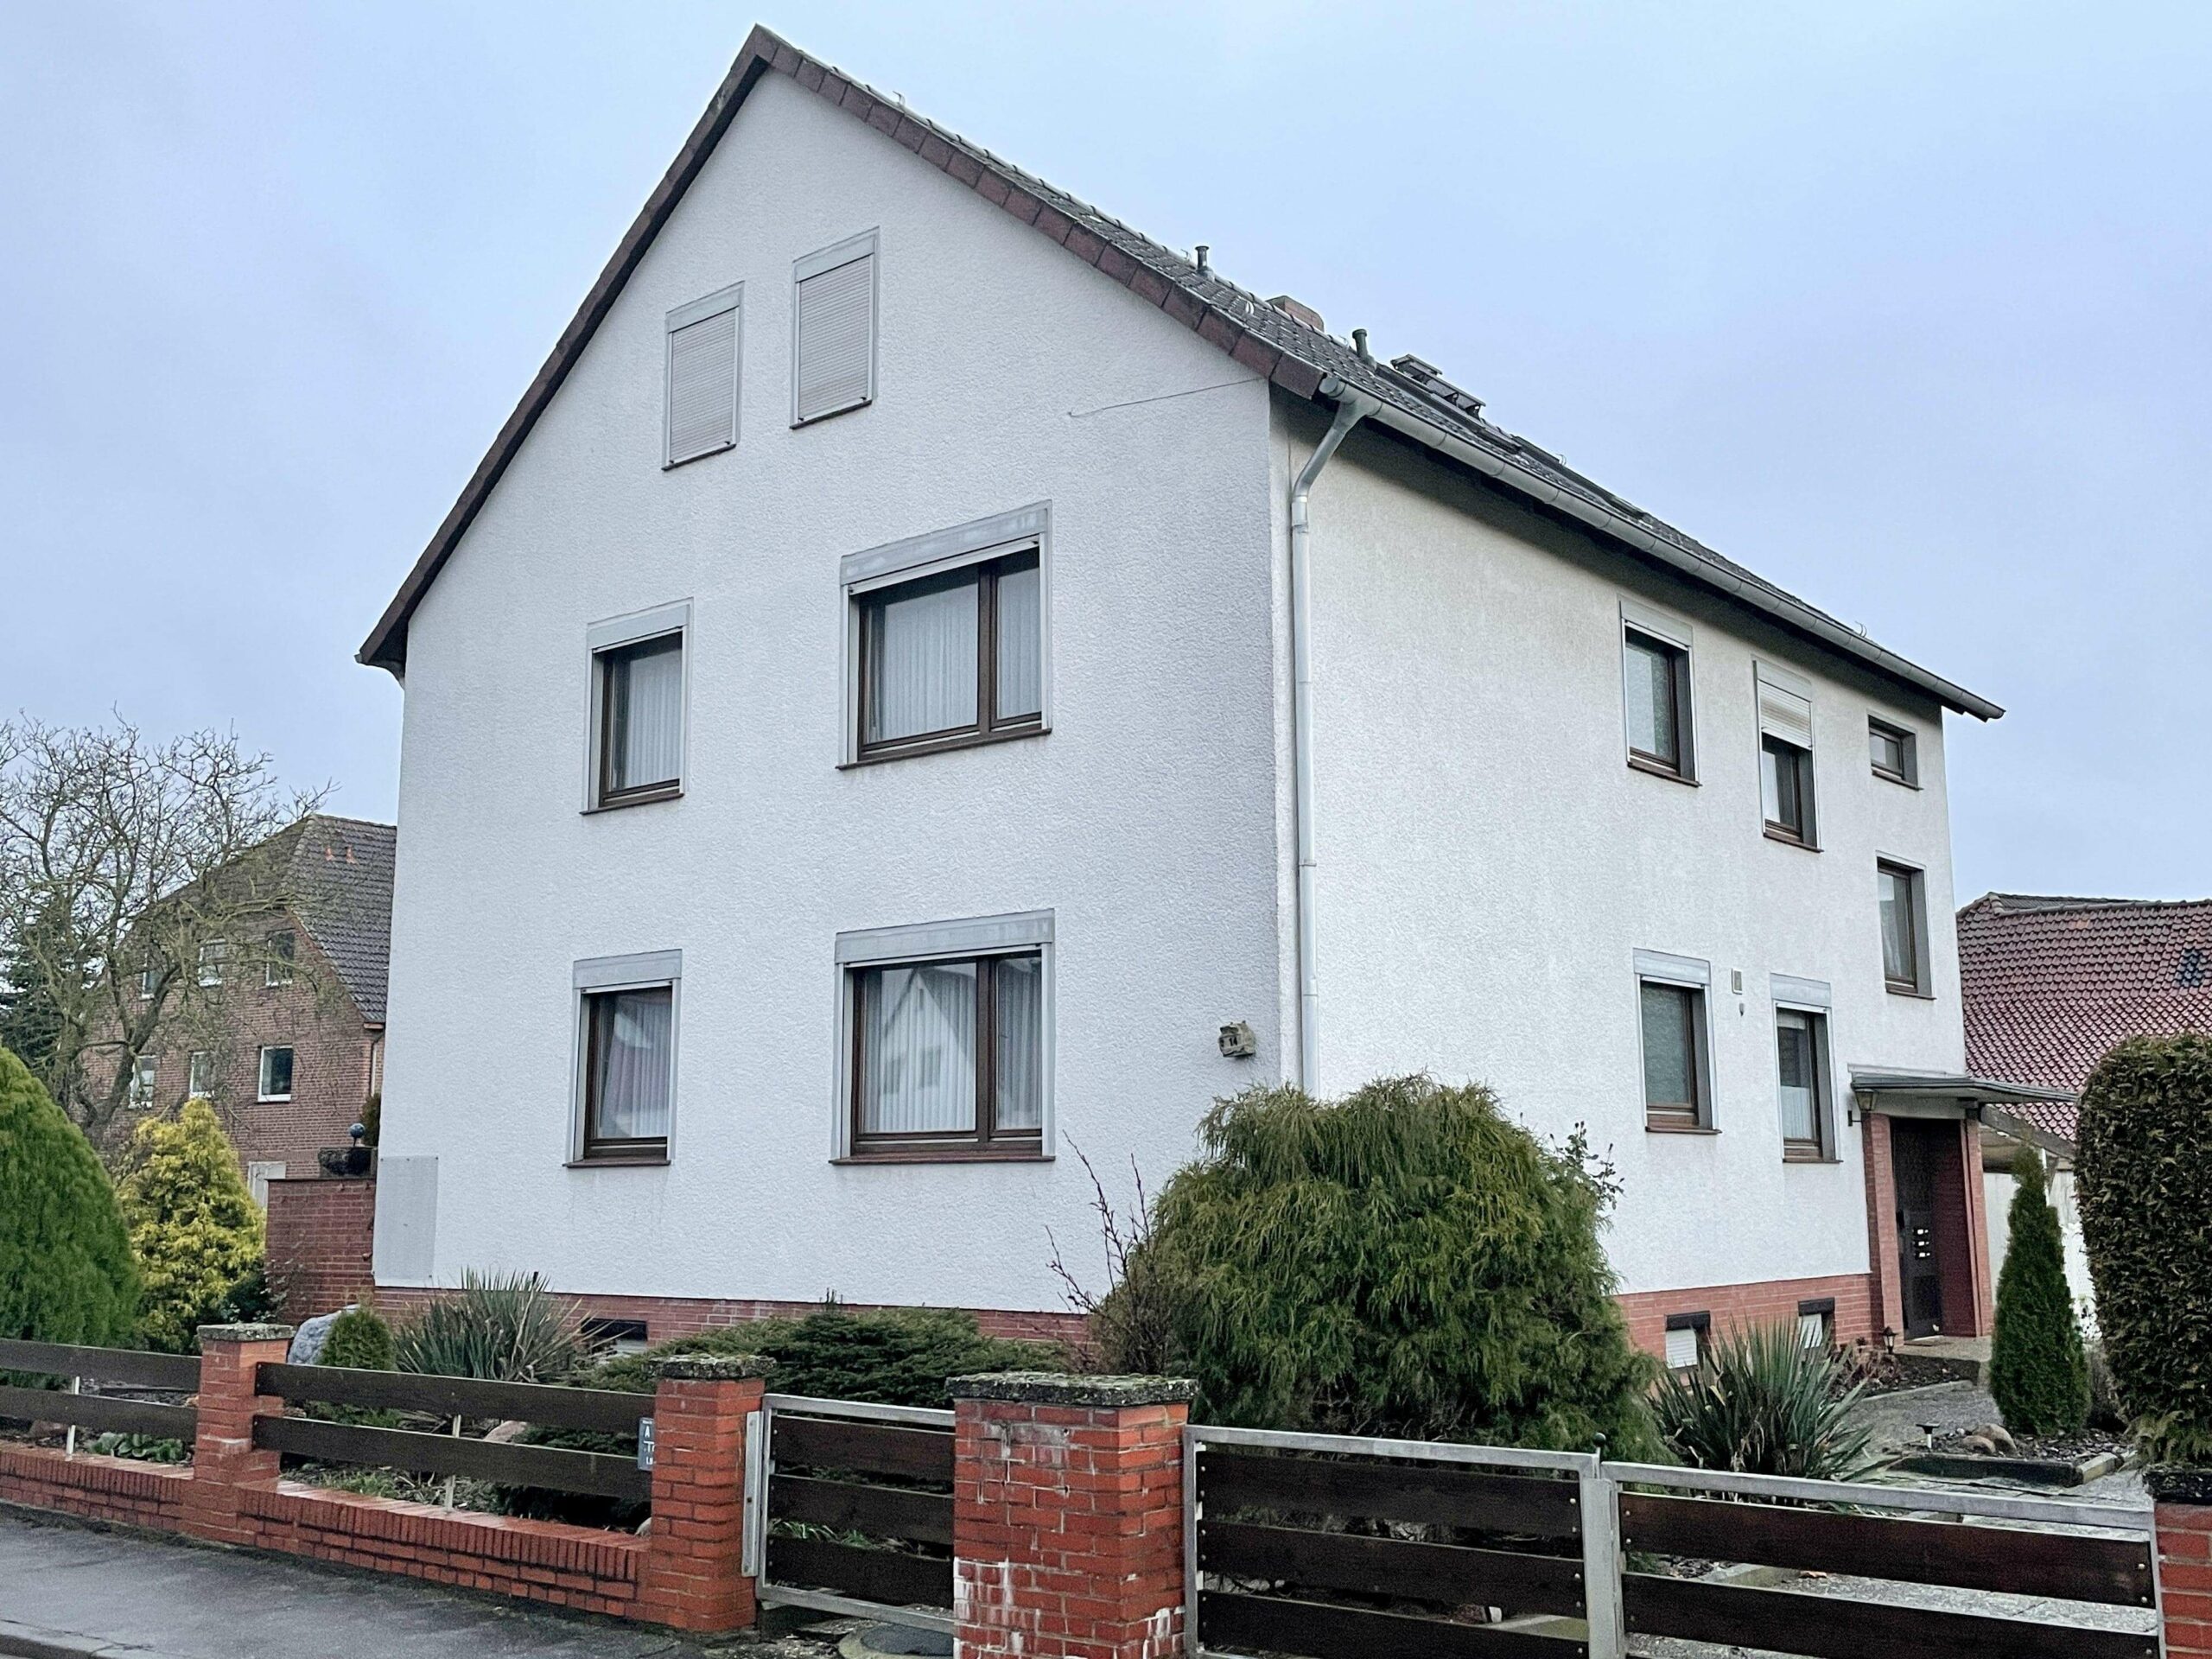 Solides 2-FH mit Einliegerwohnung im Dachgeschoss und separatem Bauplatz in Kernlage von Kirchwehren, 30926 Seelze, Mehrfamilienhaus